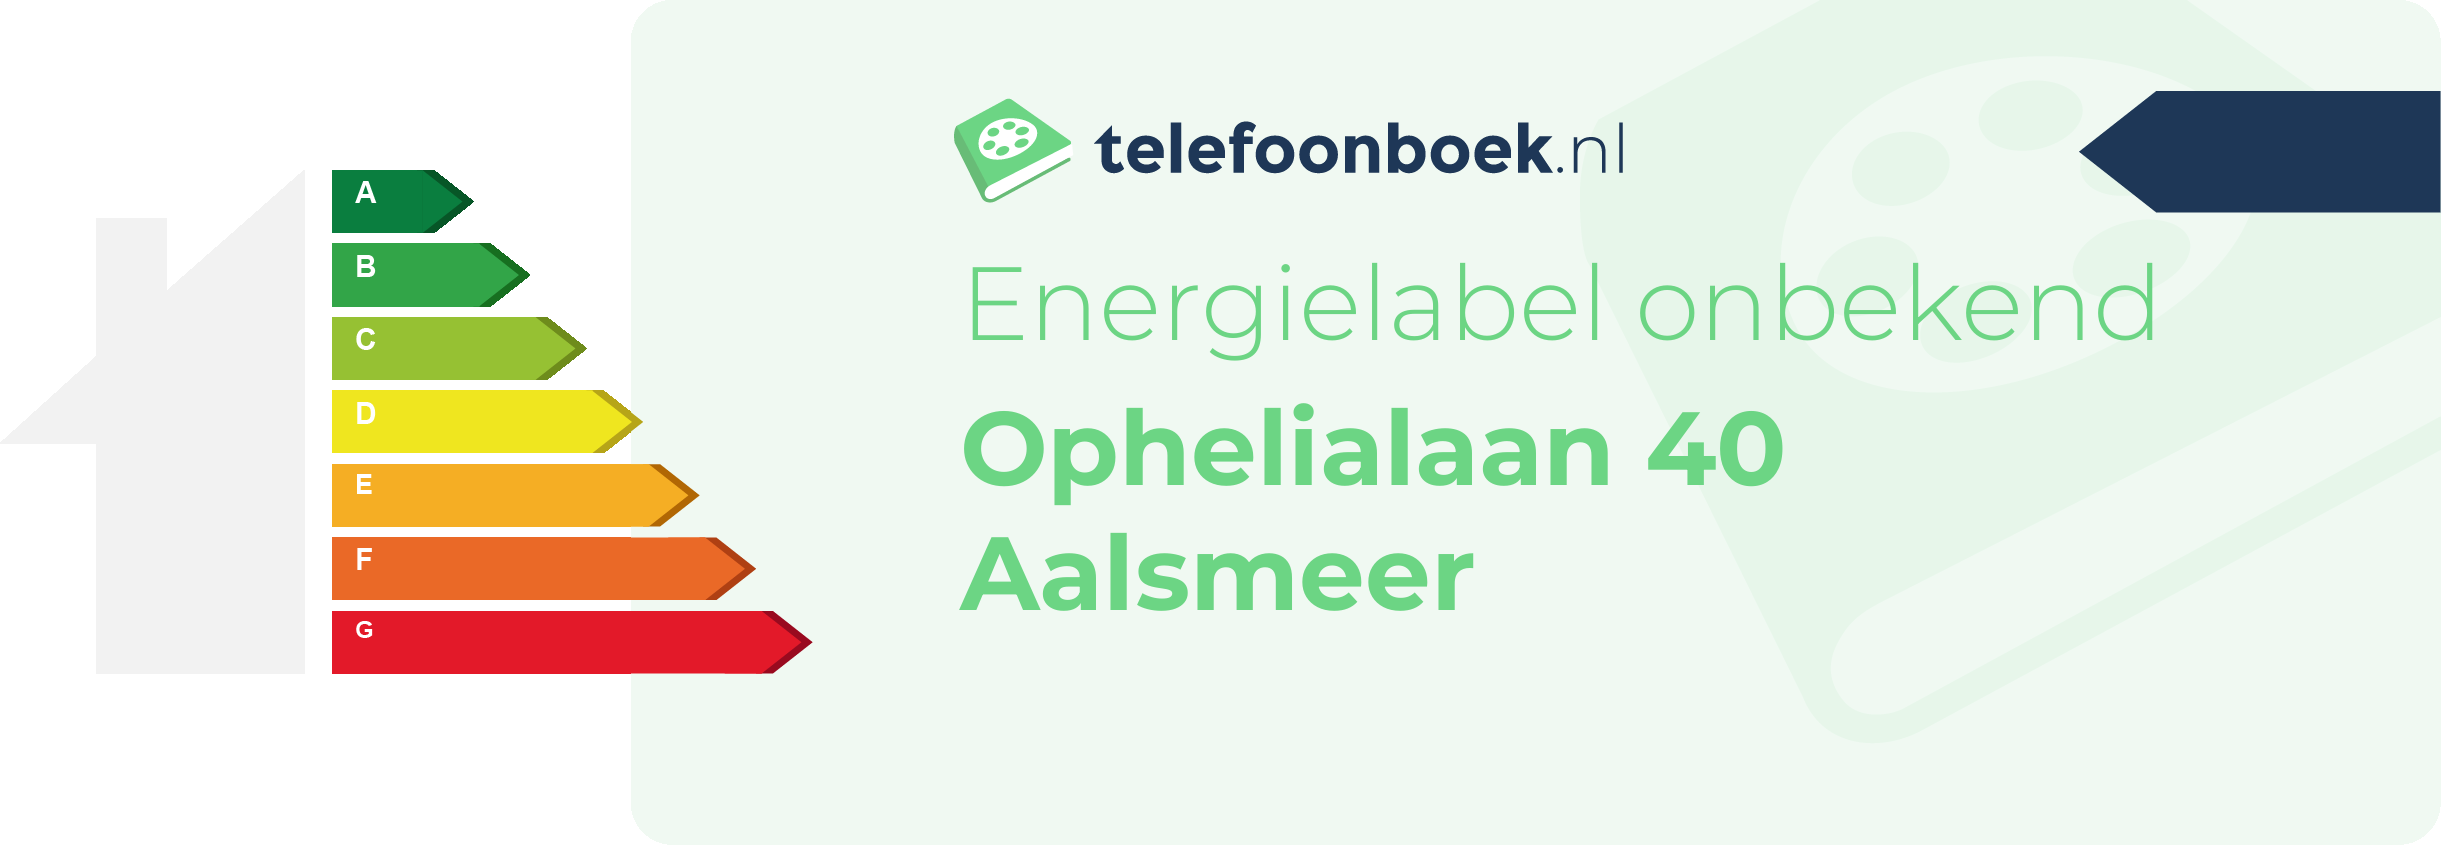 Energielabel Ophelialaan 40 Aalsmeer